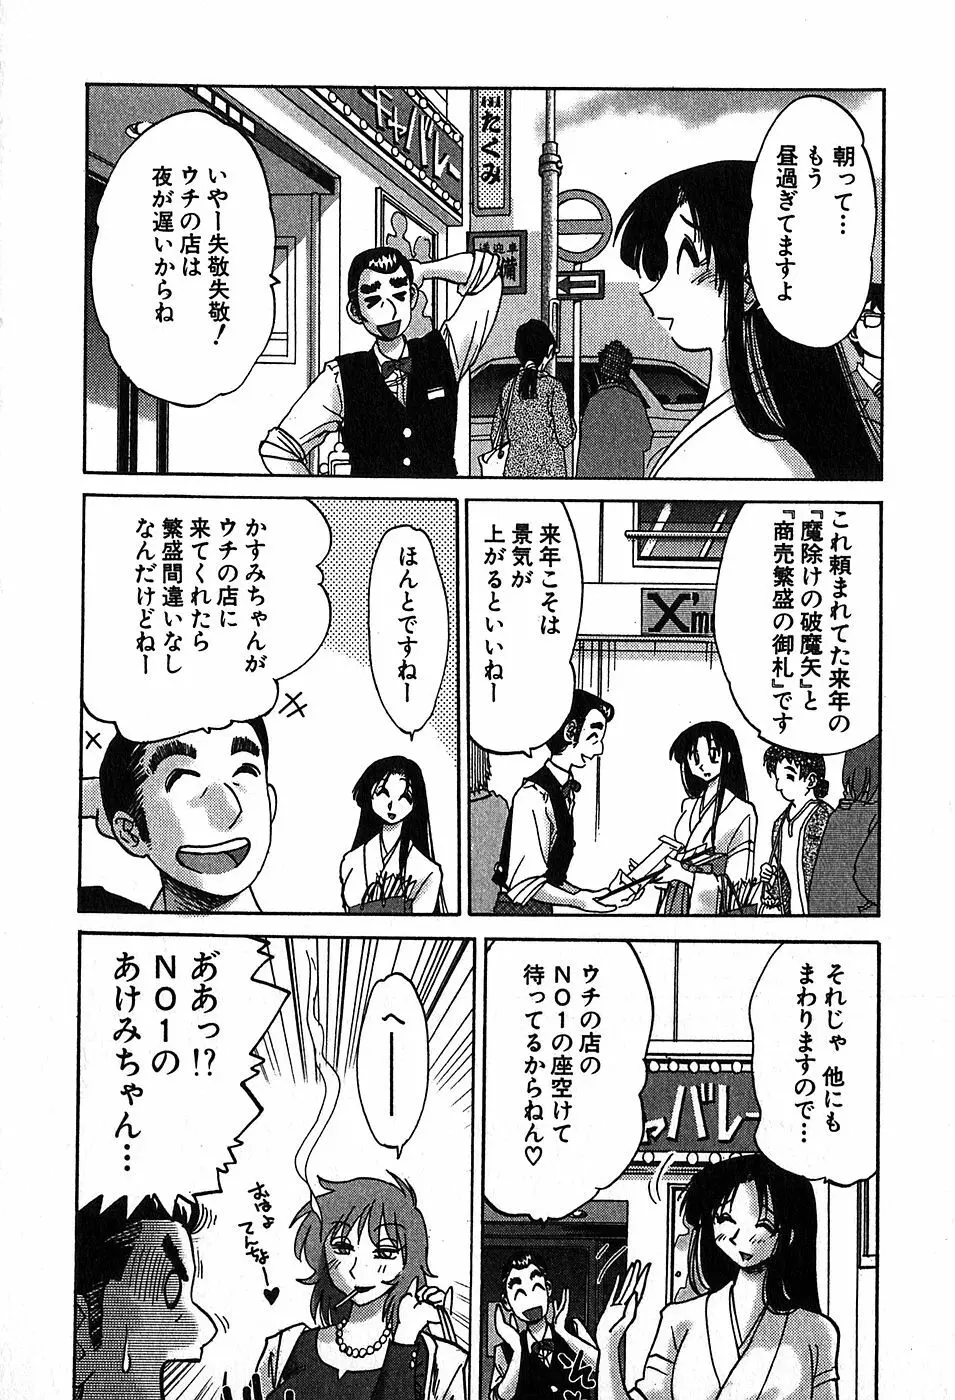 Kasumi_No_Mori Vol.2 29ページ